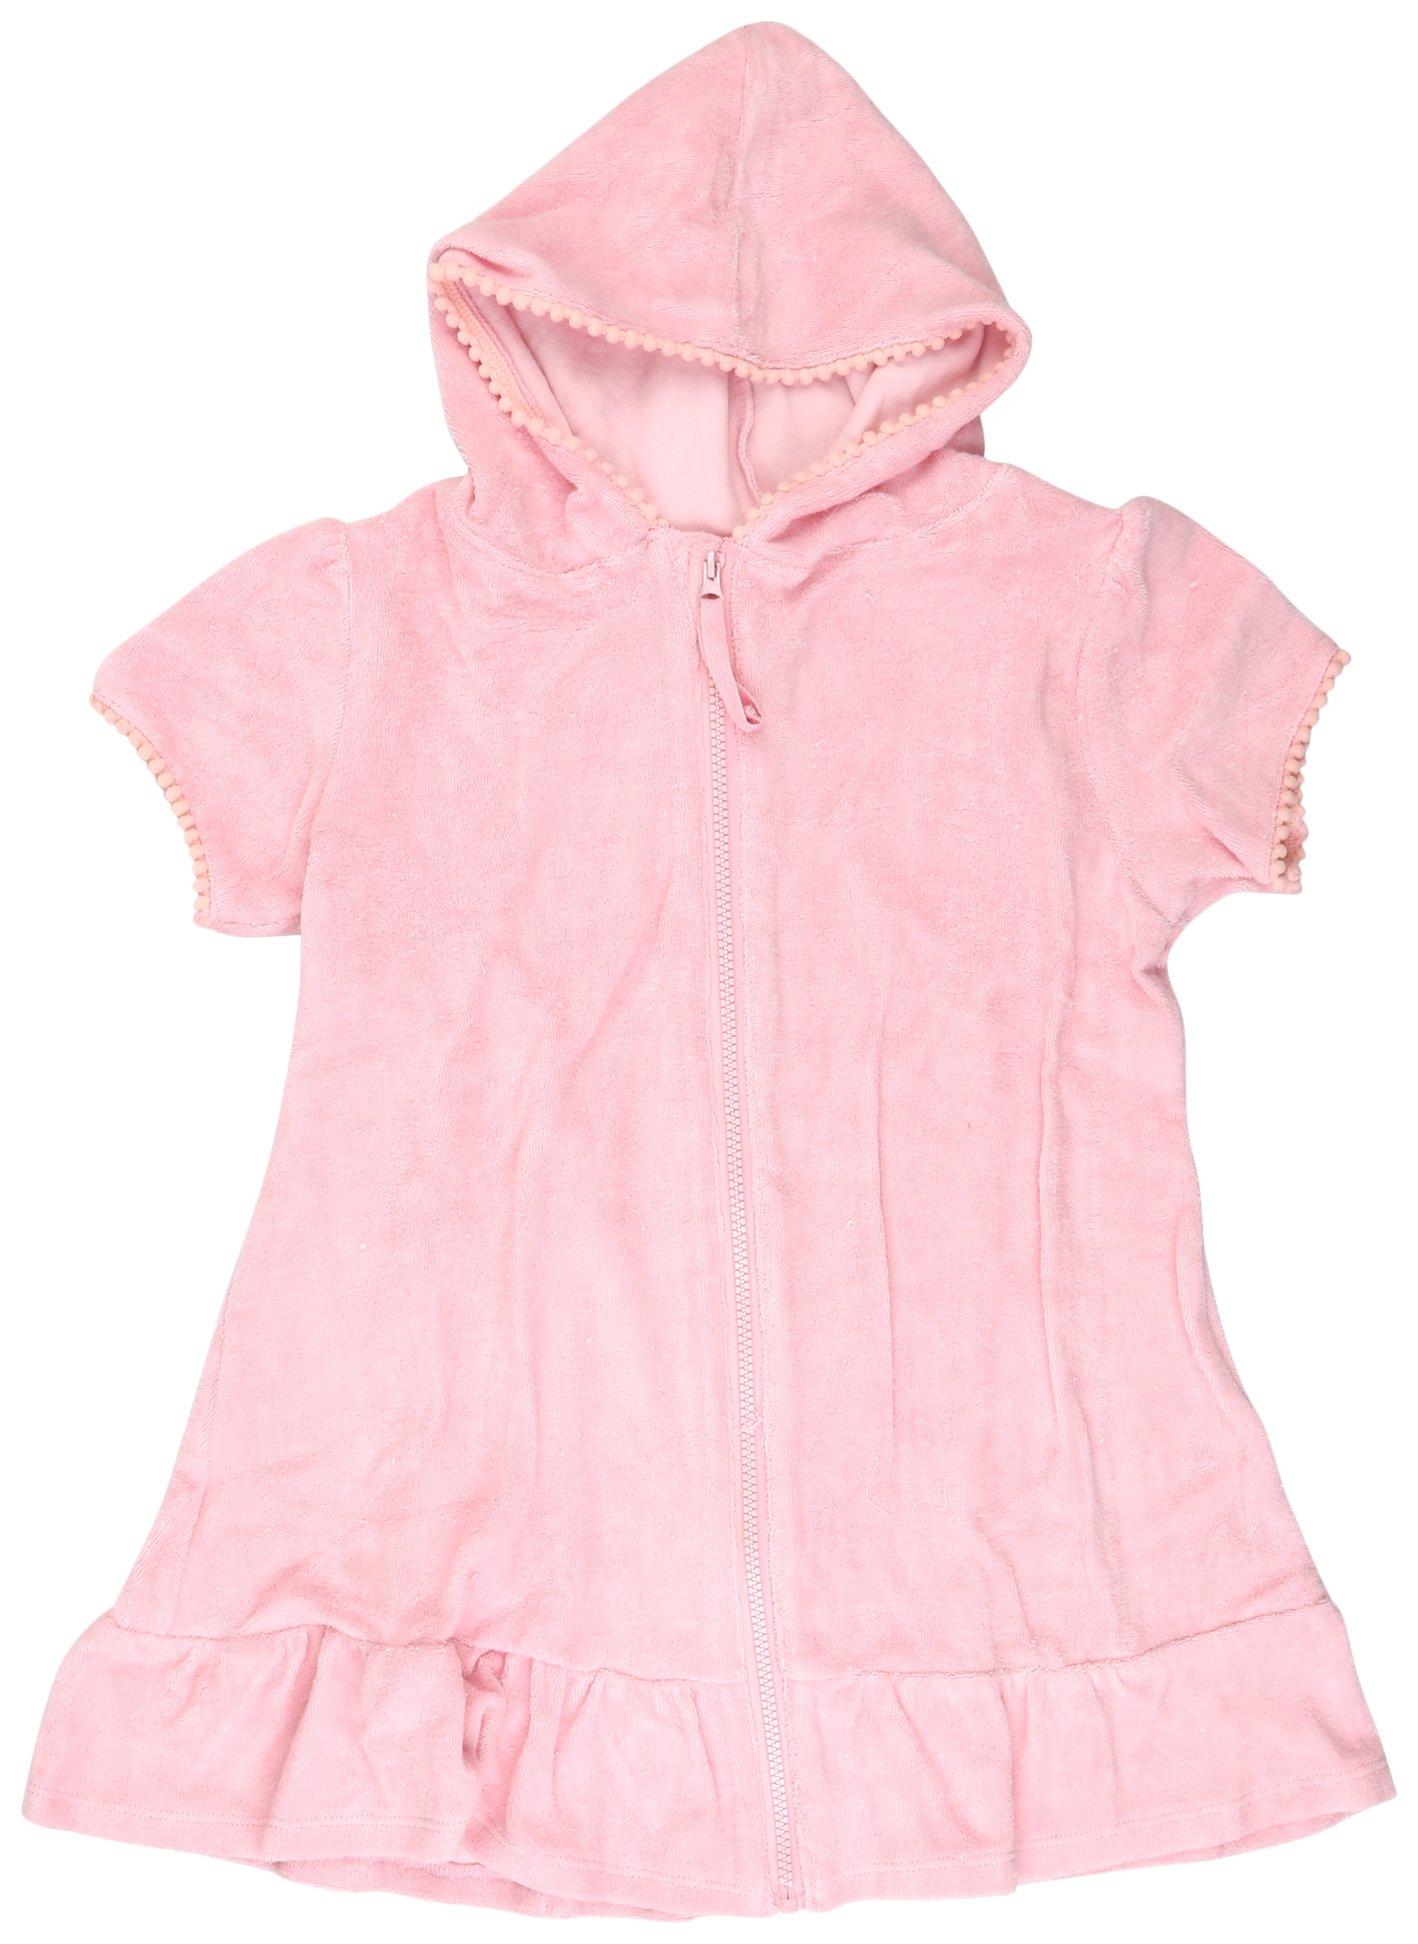 Little Girls Pink Zipper Hooded Cover Up